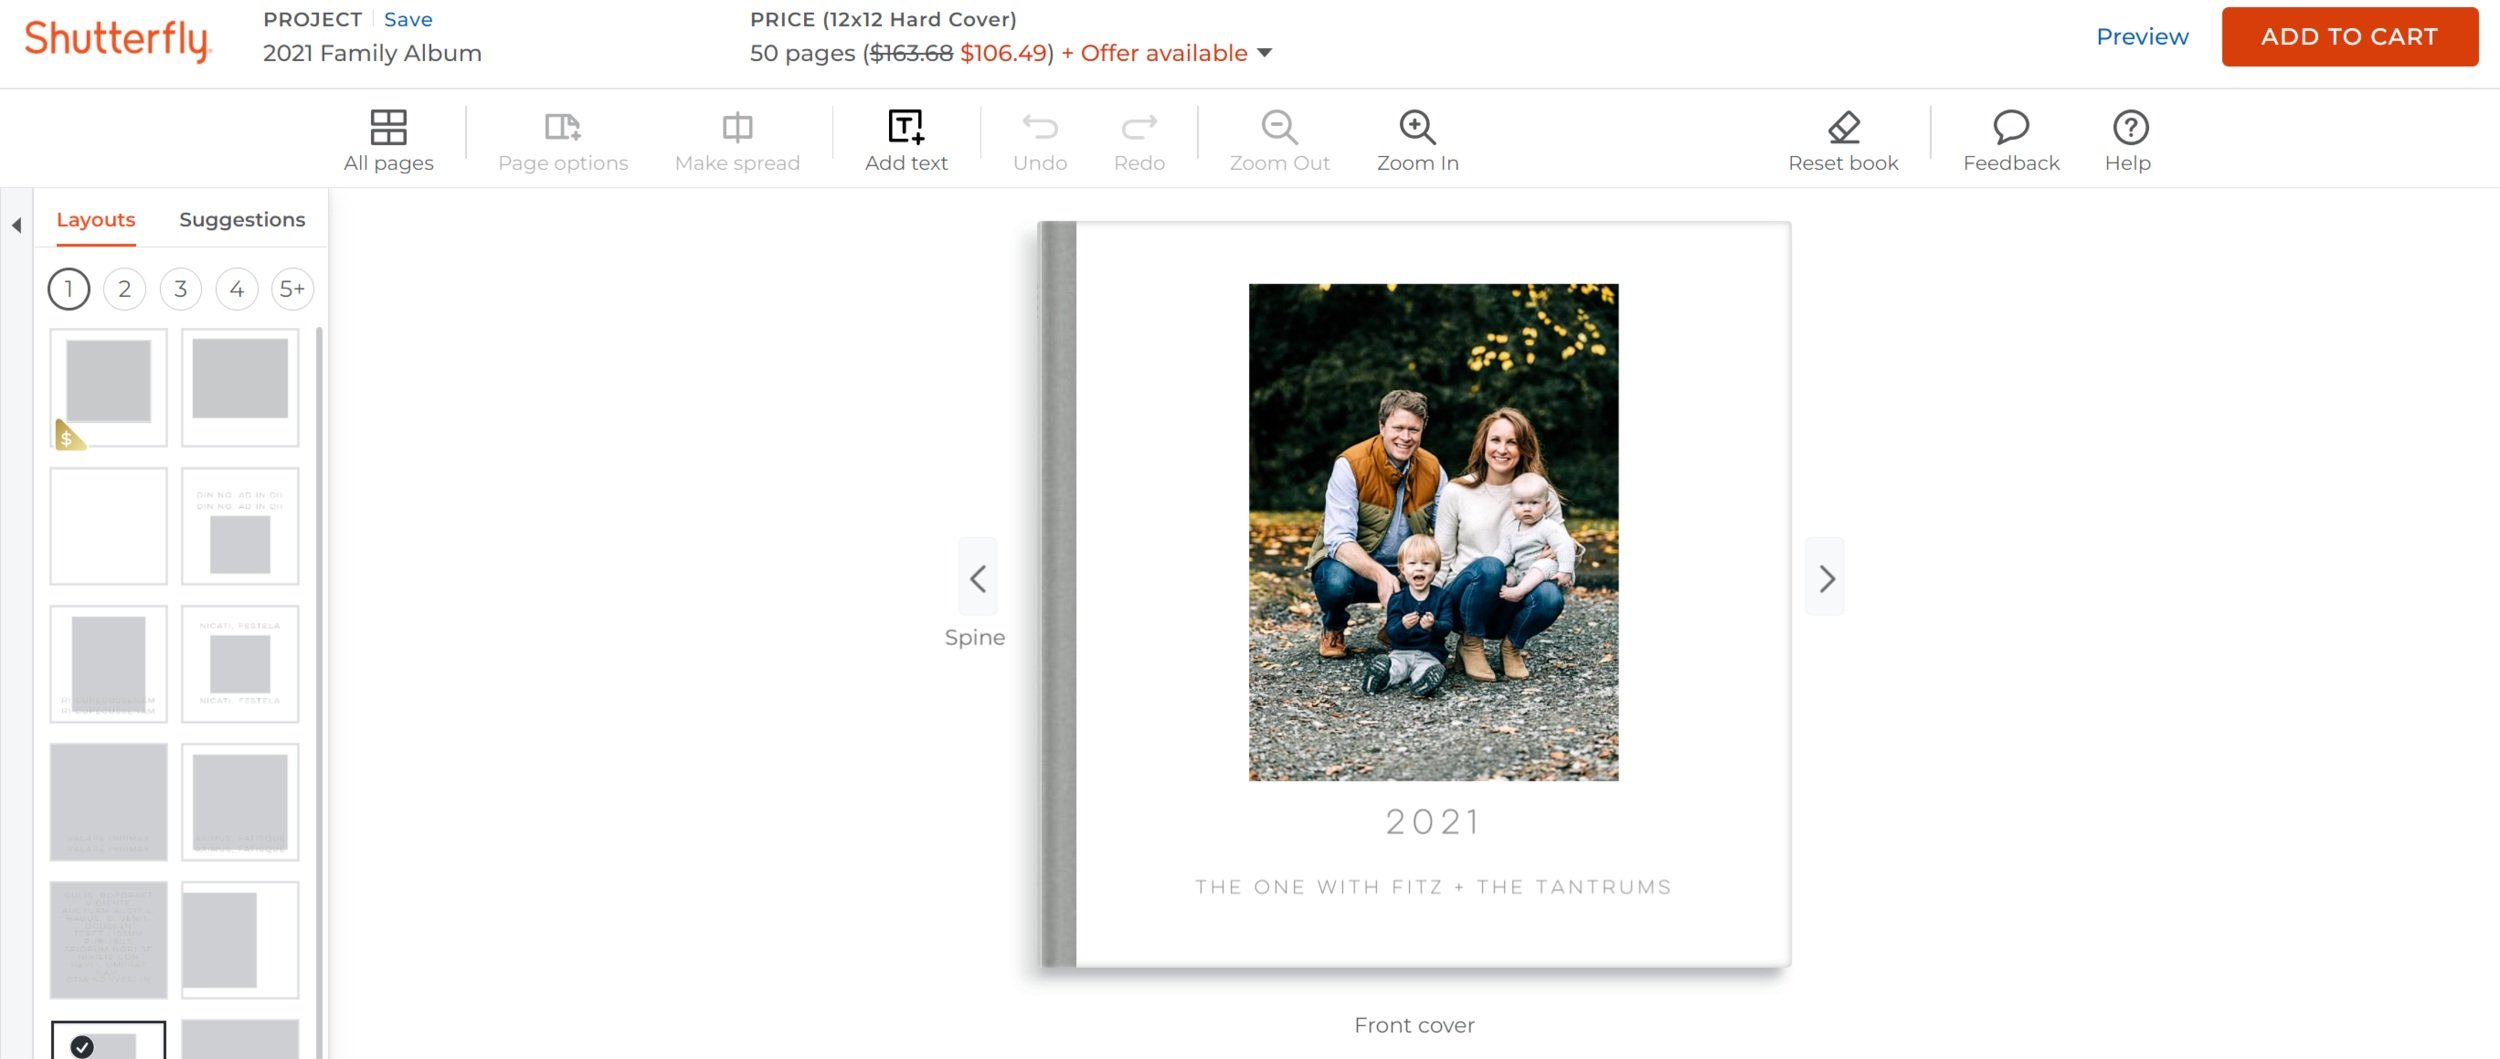 FamilyAlbum  The Best Photo-Sharing App for Families